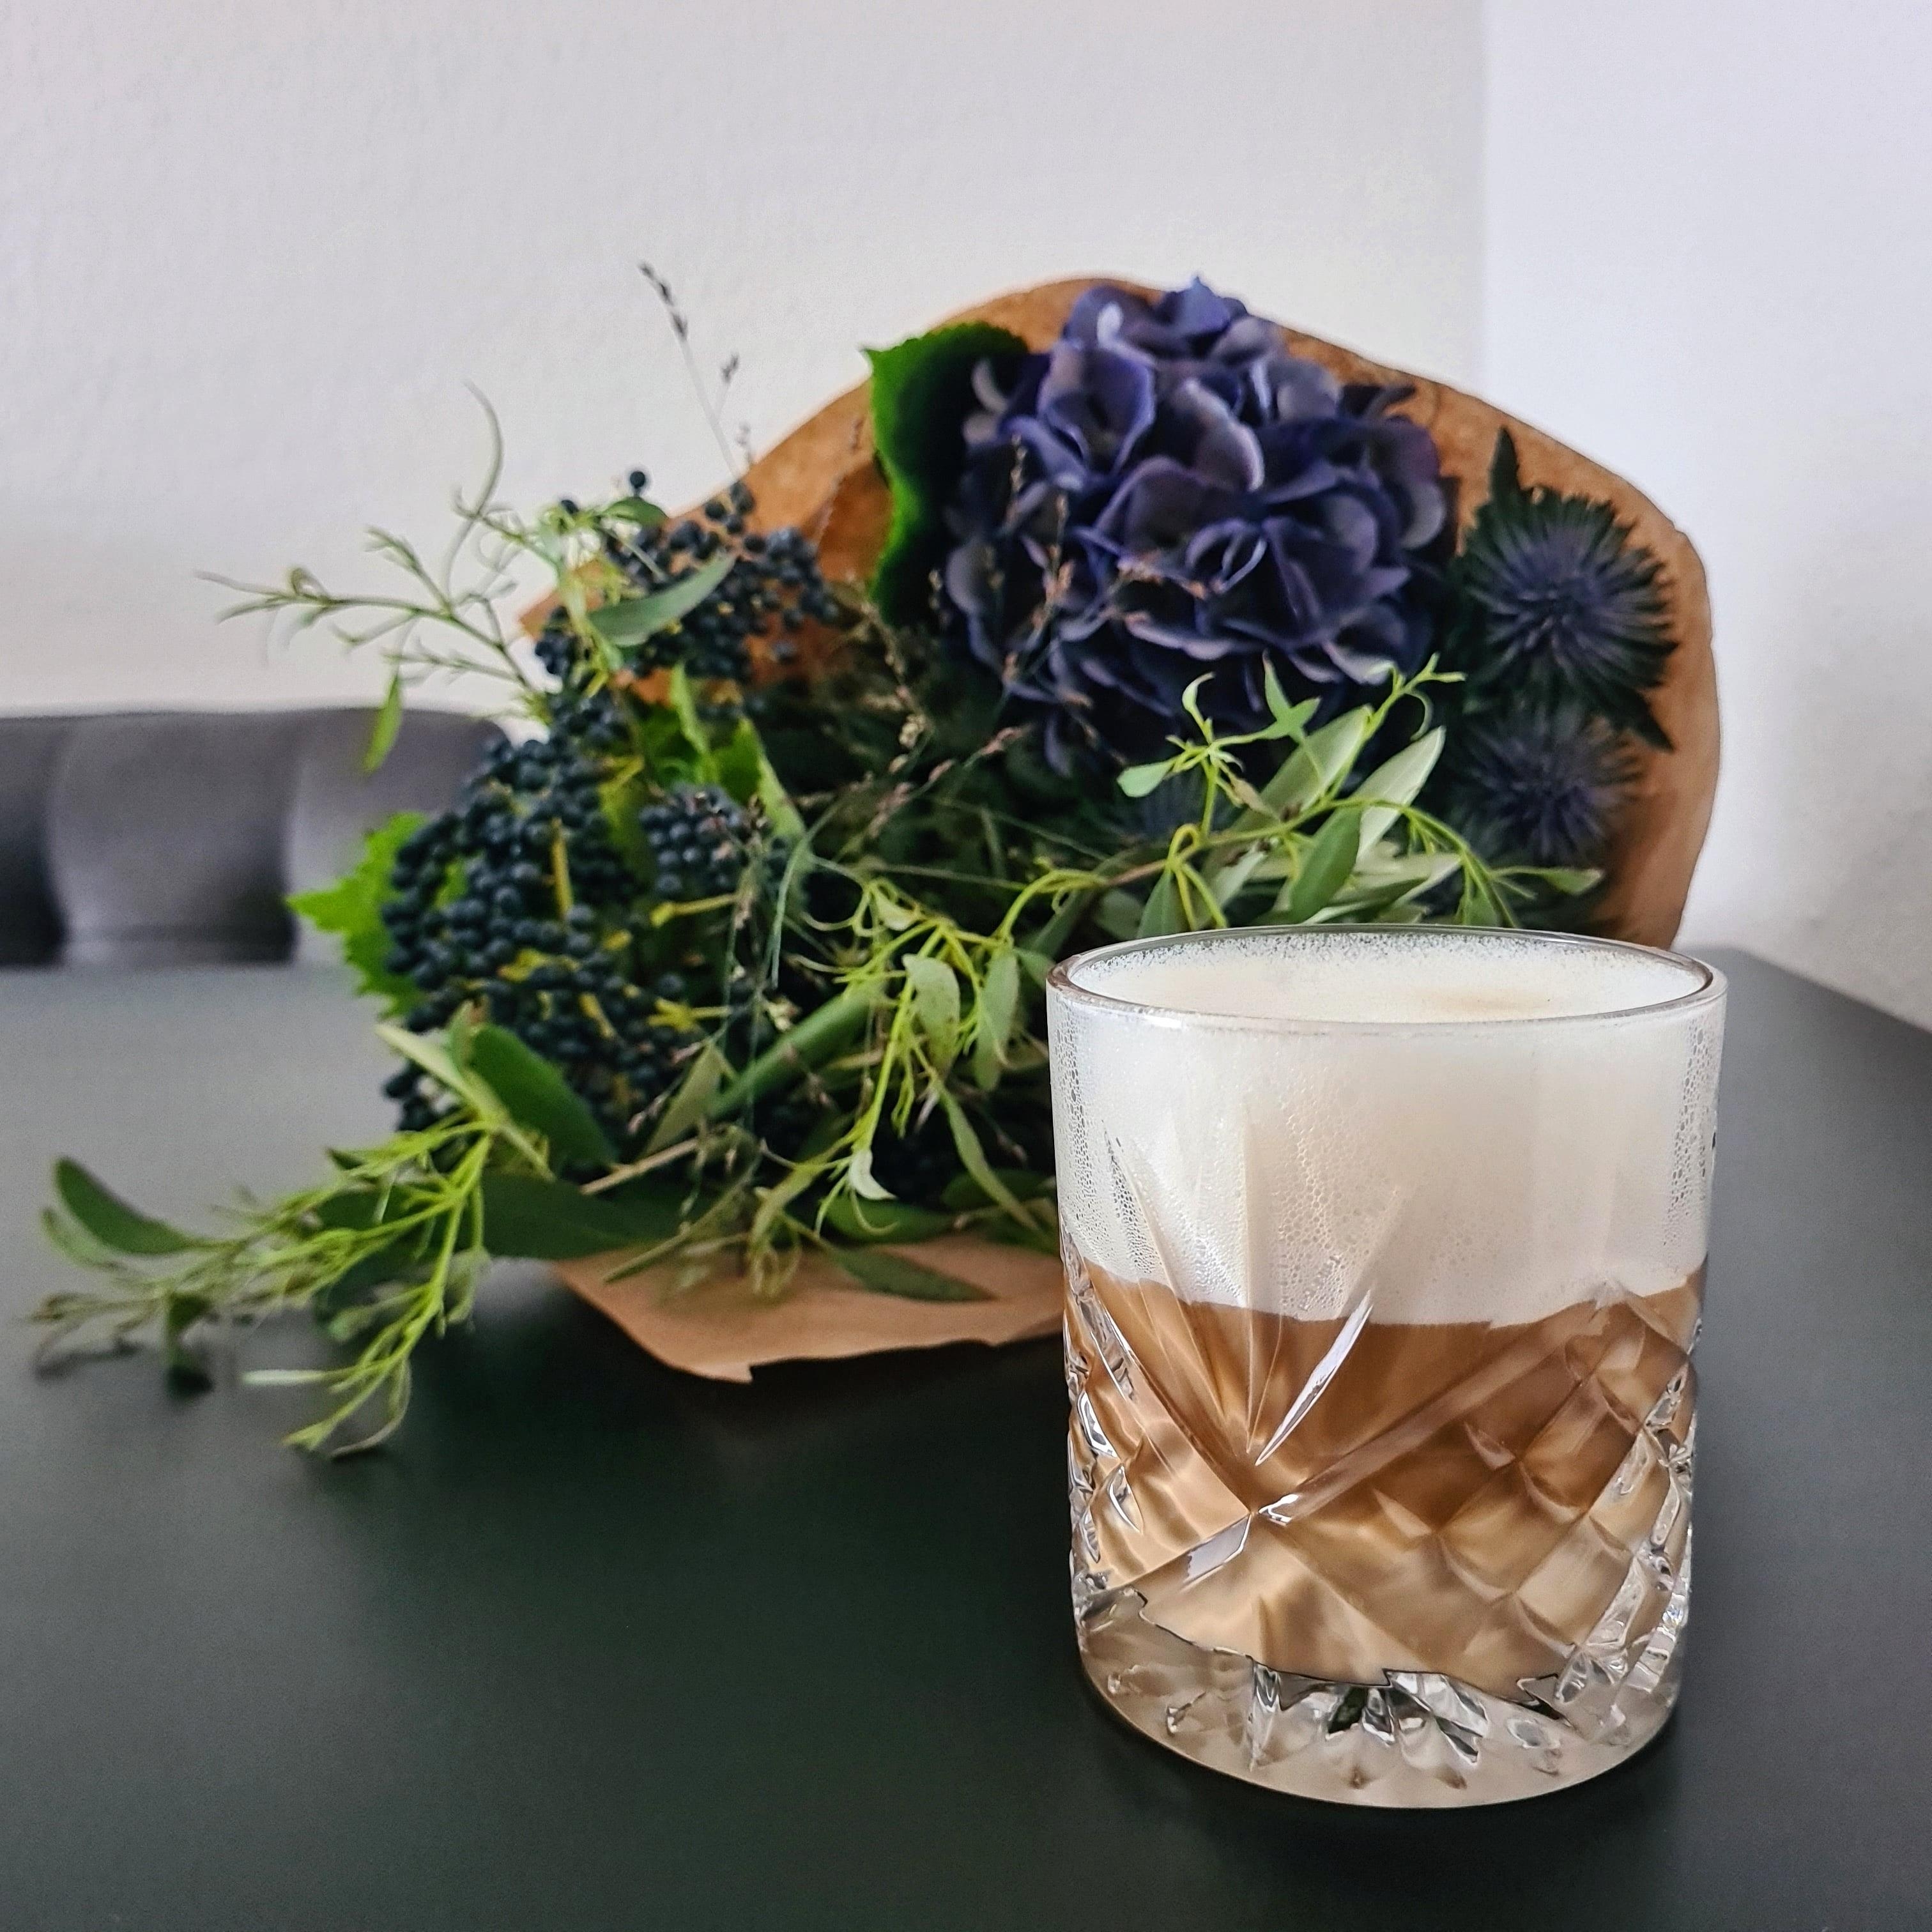 friday essentials: coffee + fresh flowers 💙 #blumenmädchen #blumenliebe #hortensien #butfirstcoffee #friyay